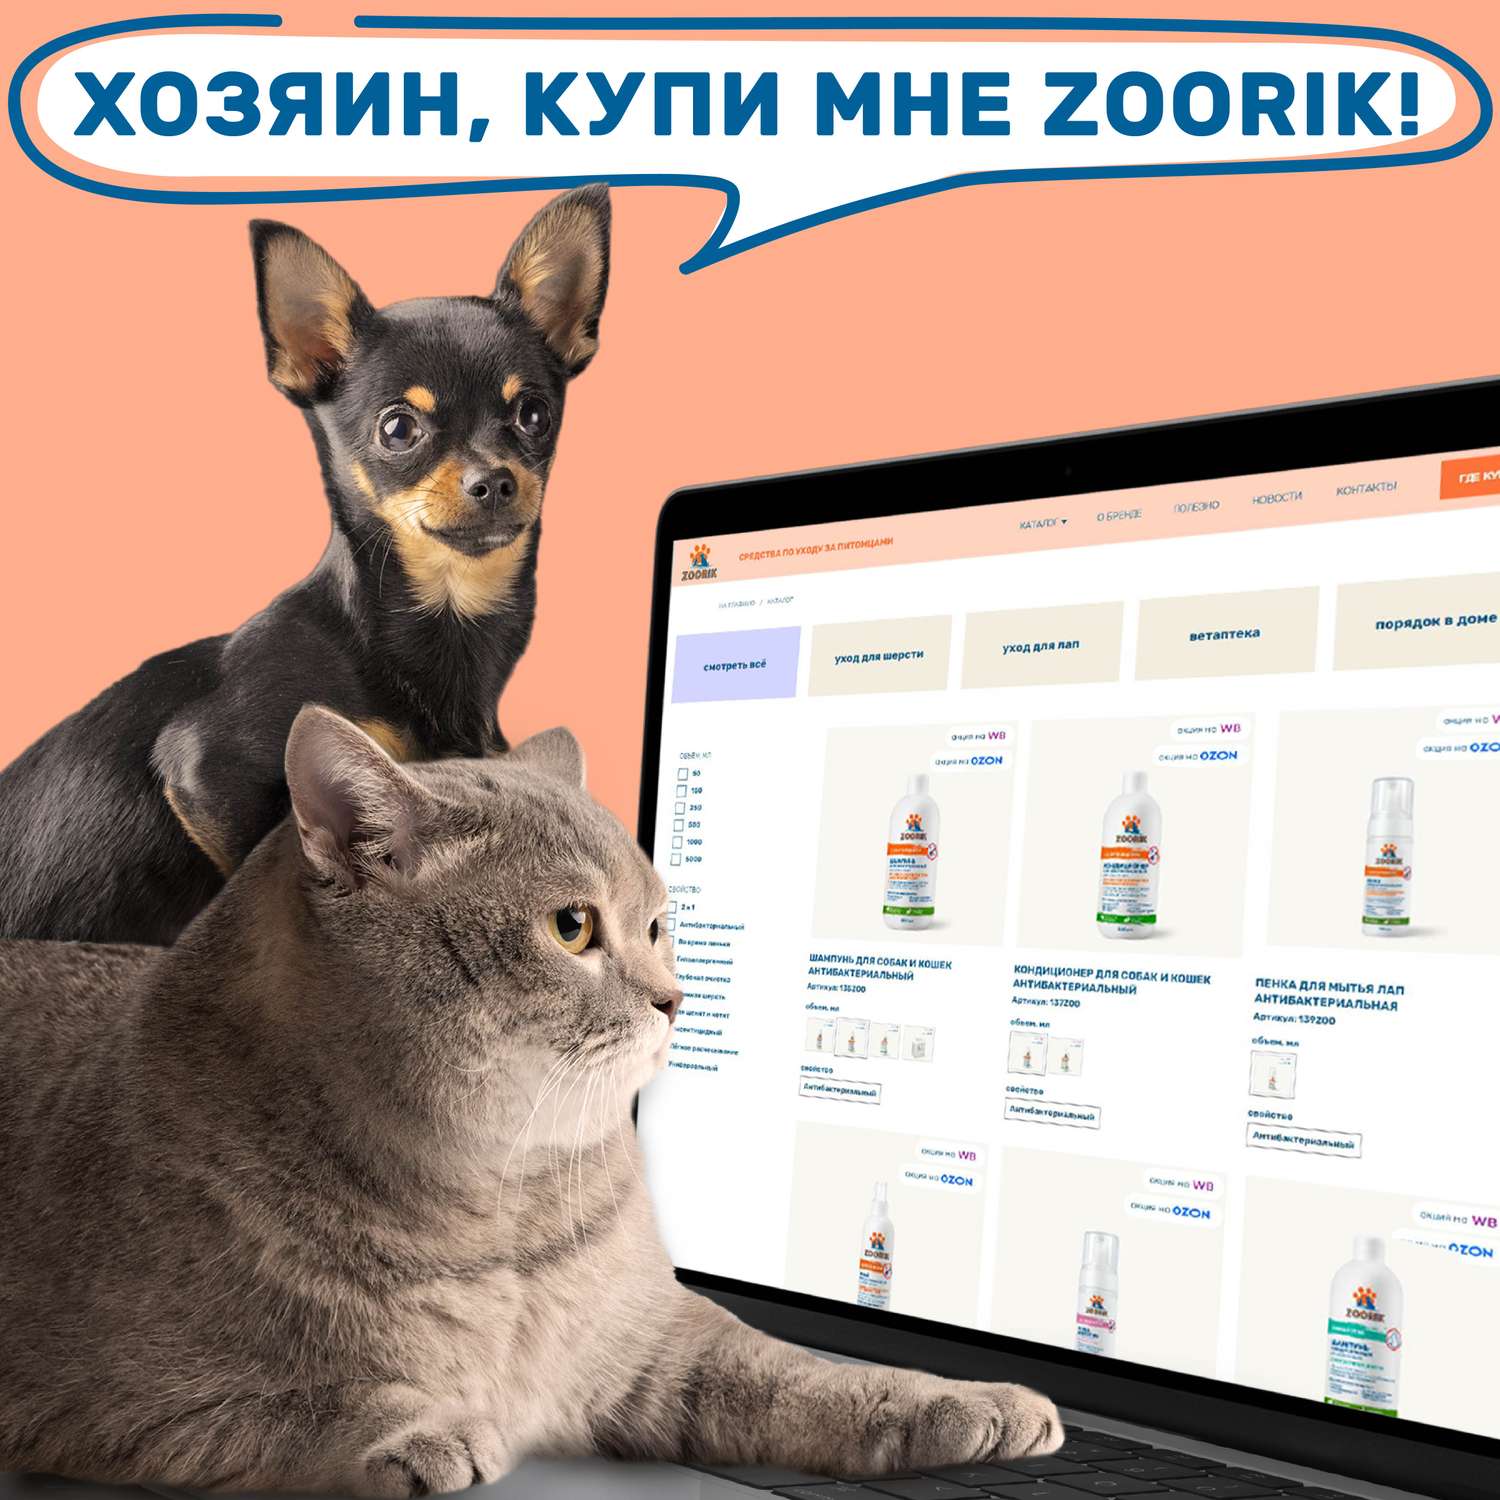 Шампунь для собак и кошек ZOORIK антибактериальный 1000 мл - фото 14